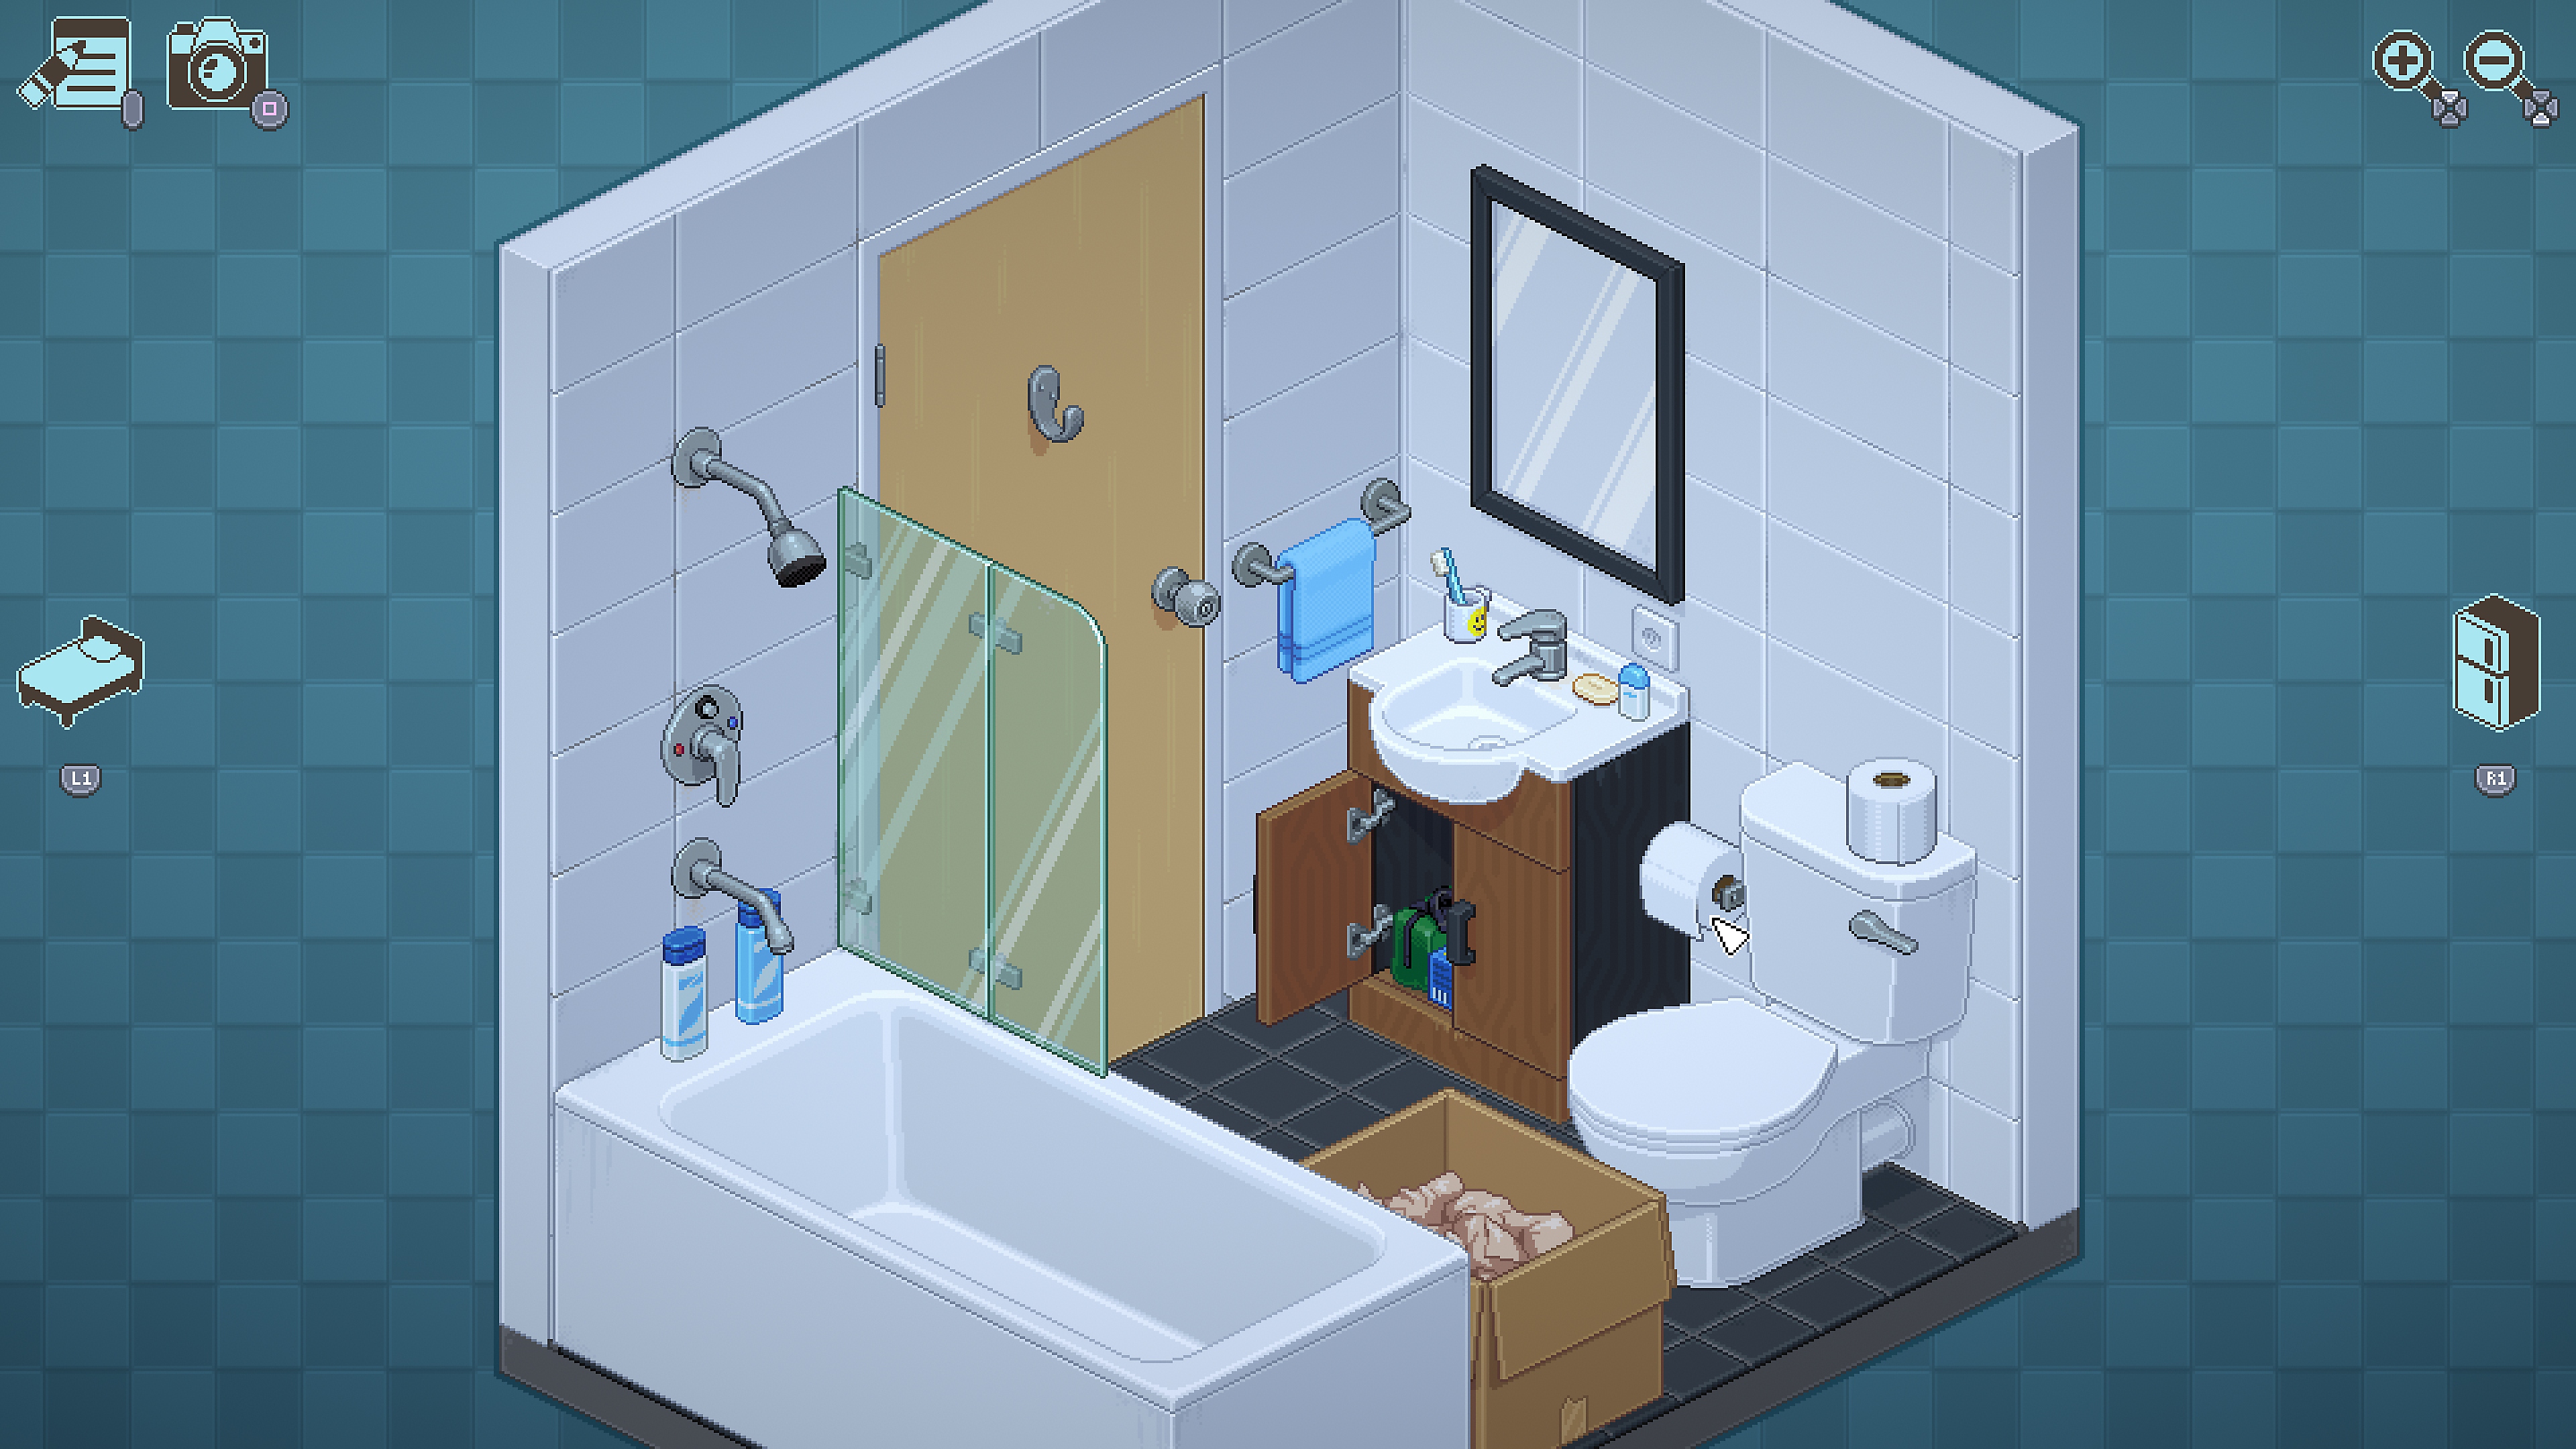 Unpacking-Screenshot mit einer Szene im Badezimmer.